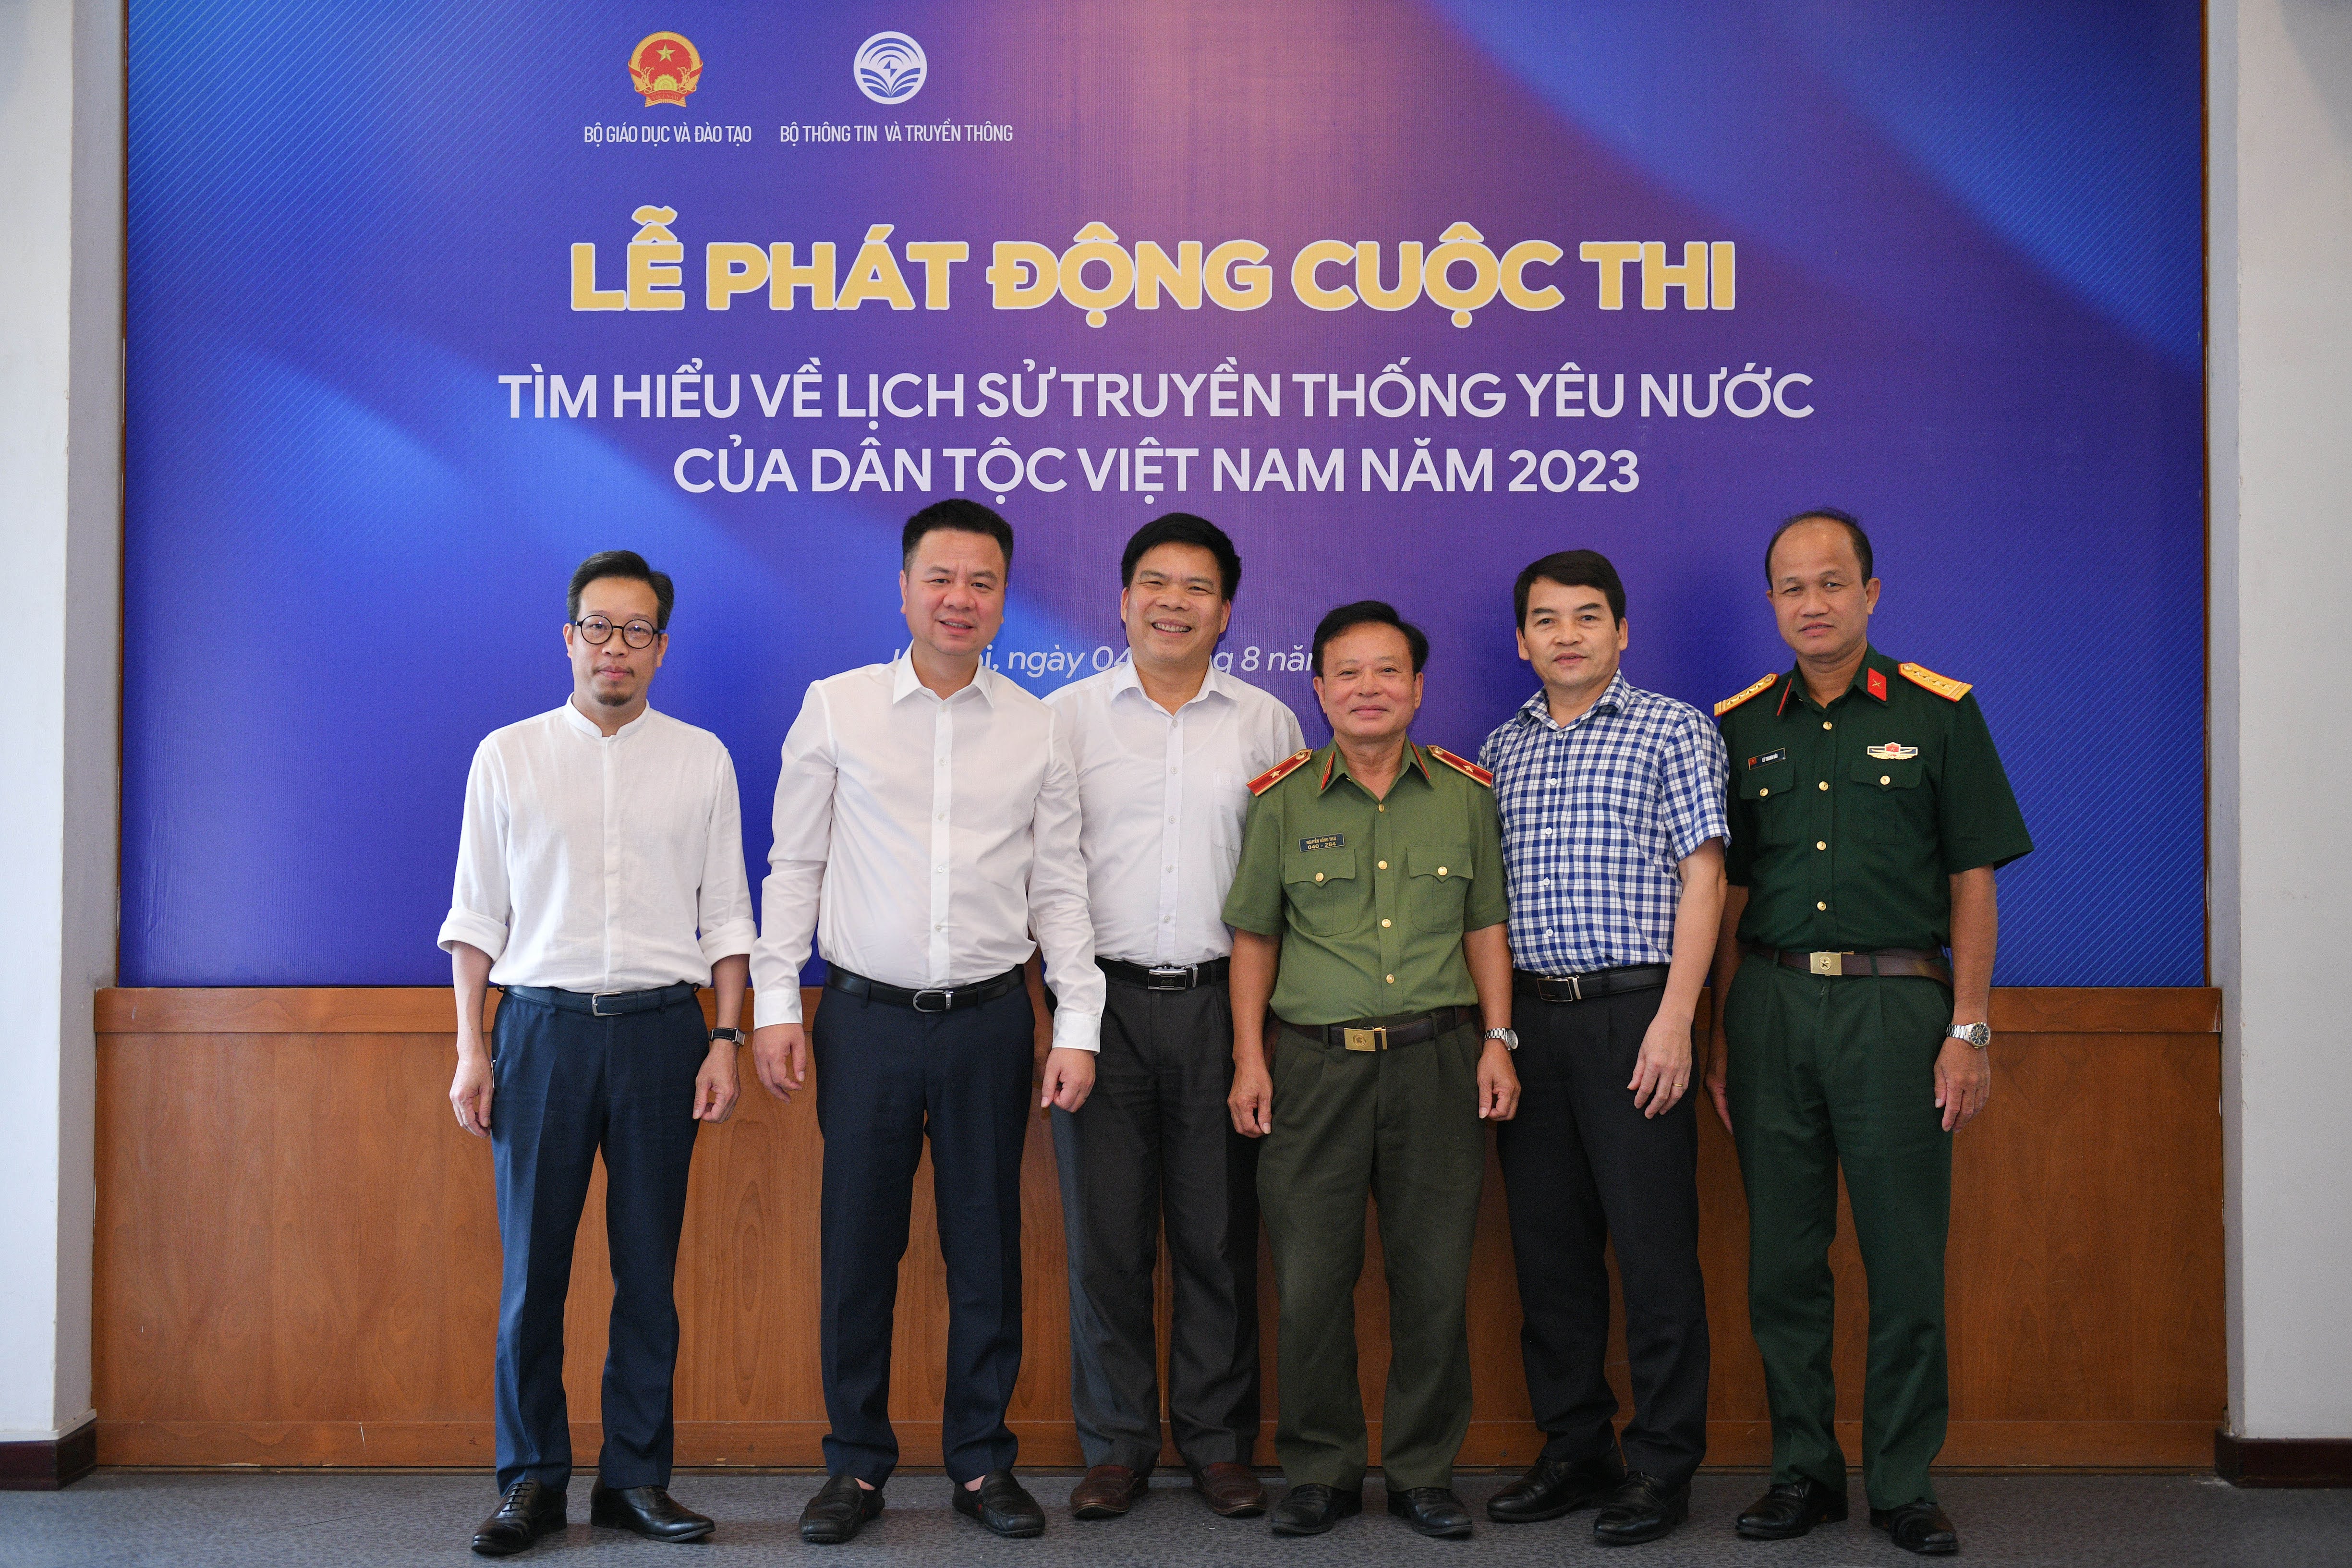 Các đại biểu dự Lễ phát động cuộc thi “Tìm hiểu về lịch sử truyền thống yêu nước của dân tộc Việt Nam” năm 2023.